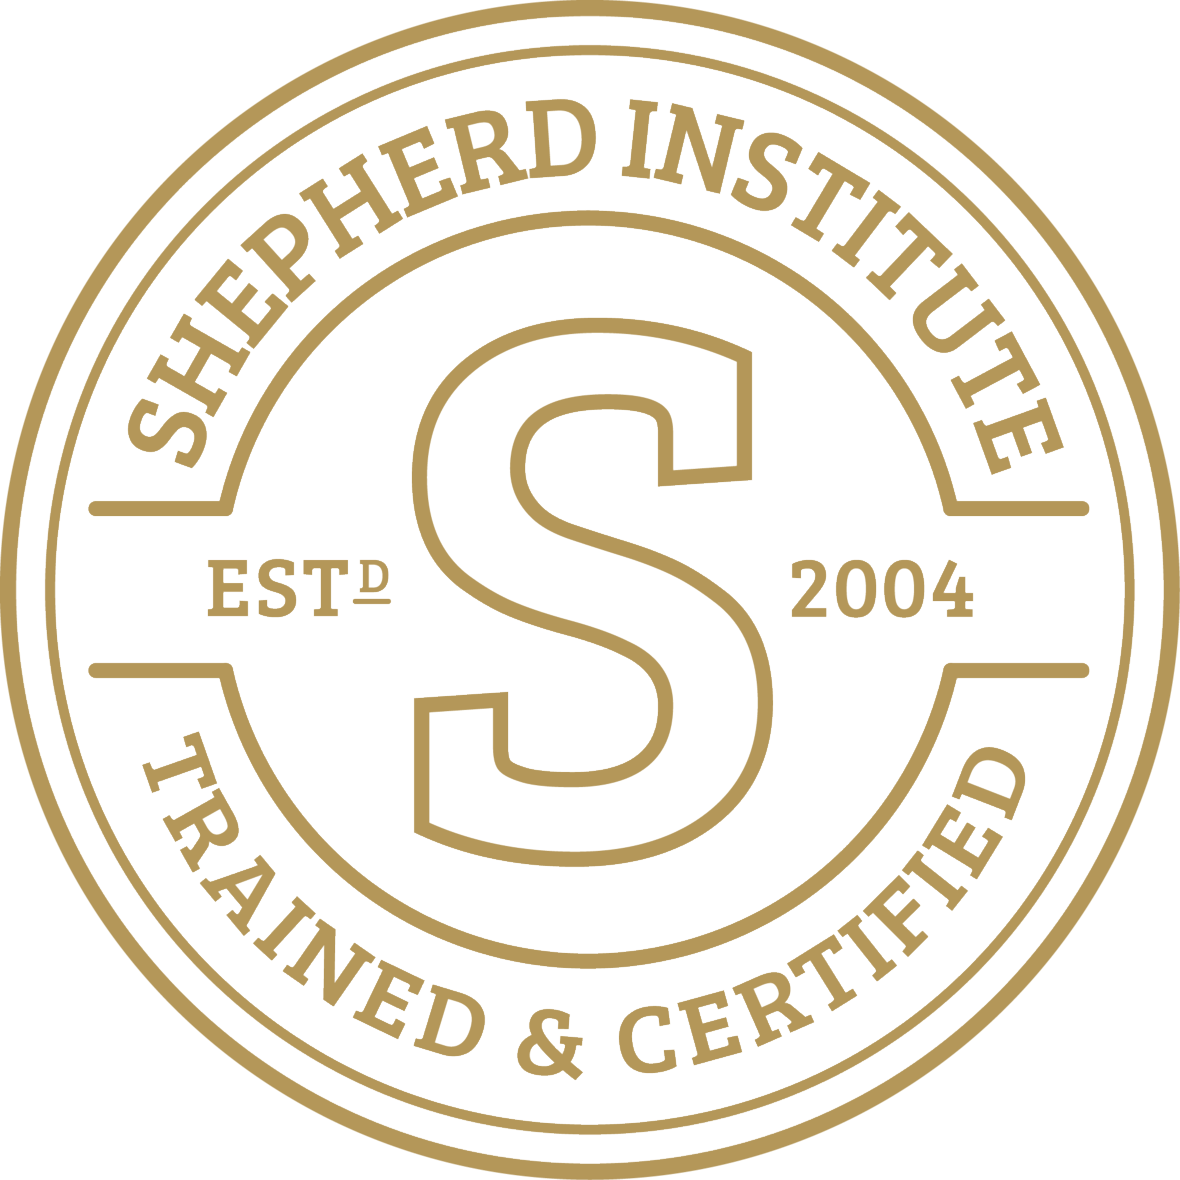 Shepherd Method Certified